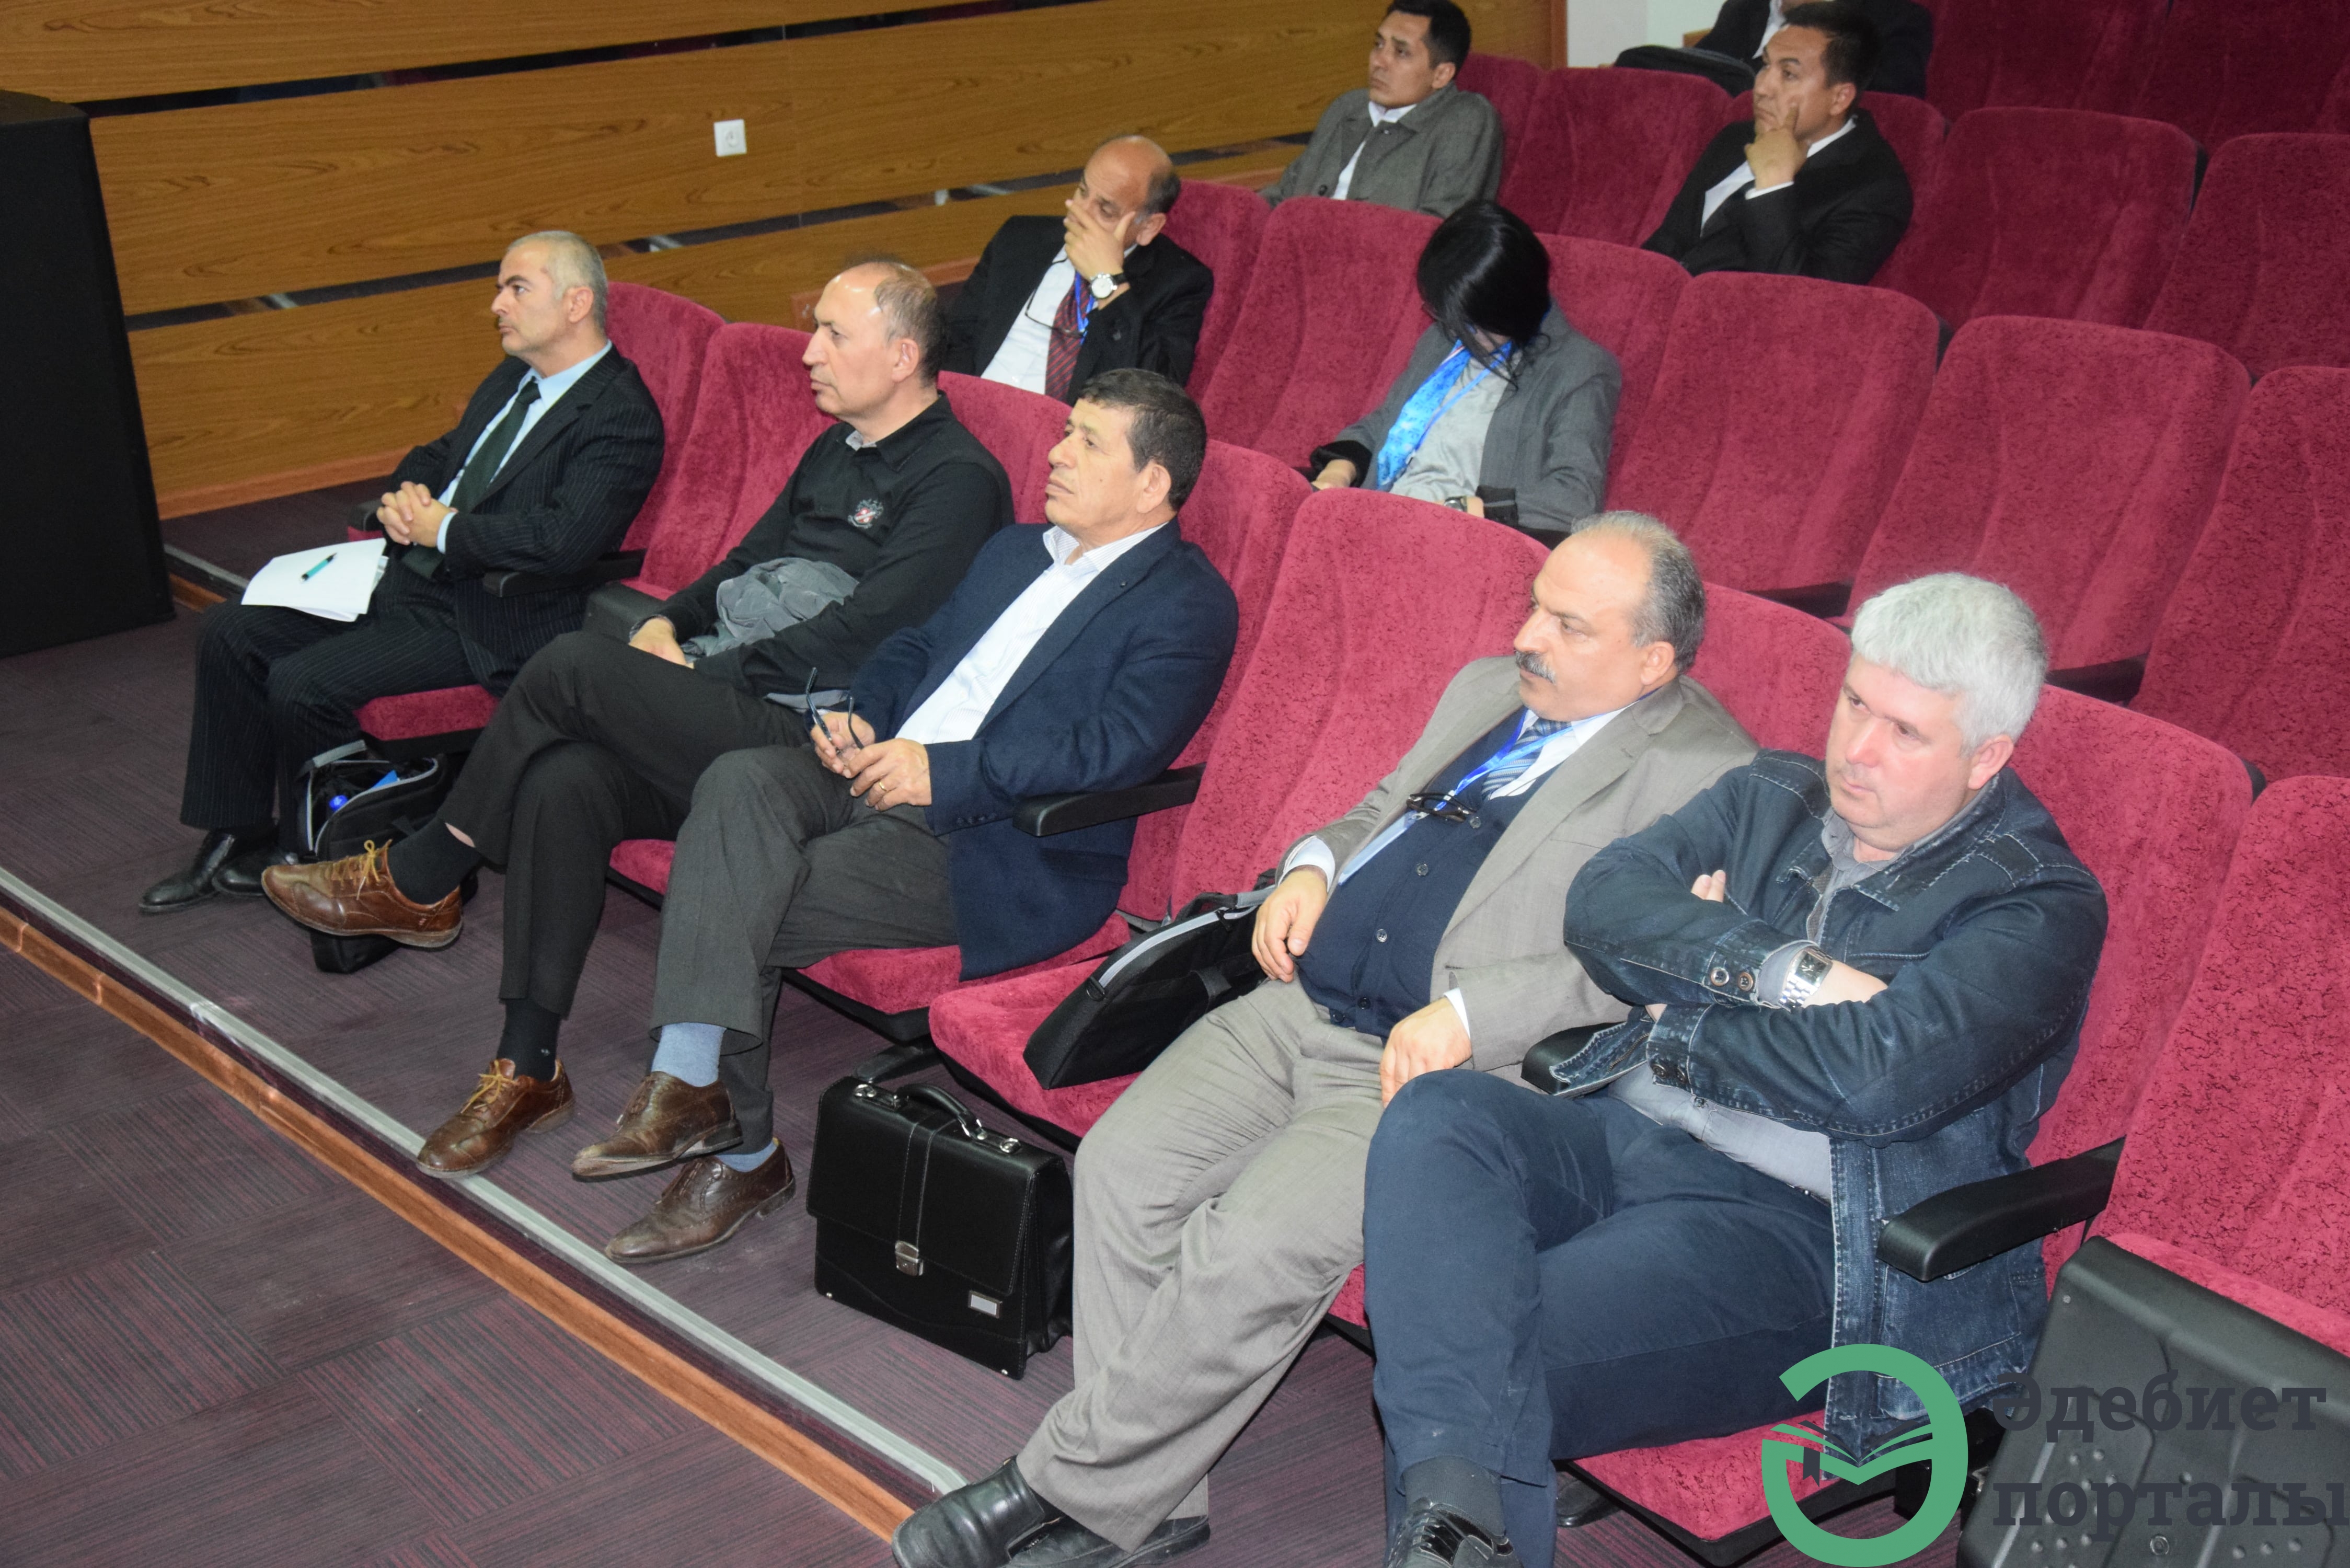 Халықаралық әлеуметтік ғылымдар конгресі: ІІІ Түркістан форумы  - фото 37 - adebiportal.kz